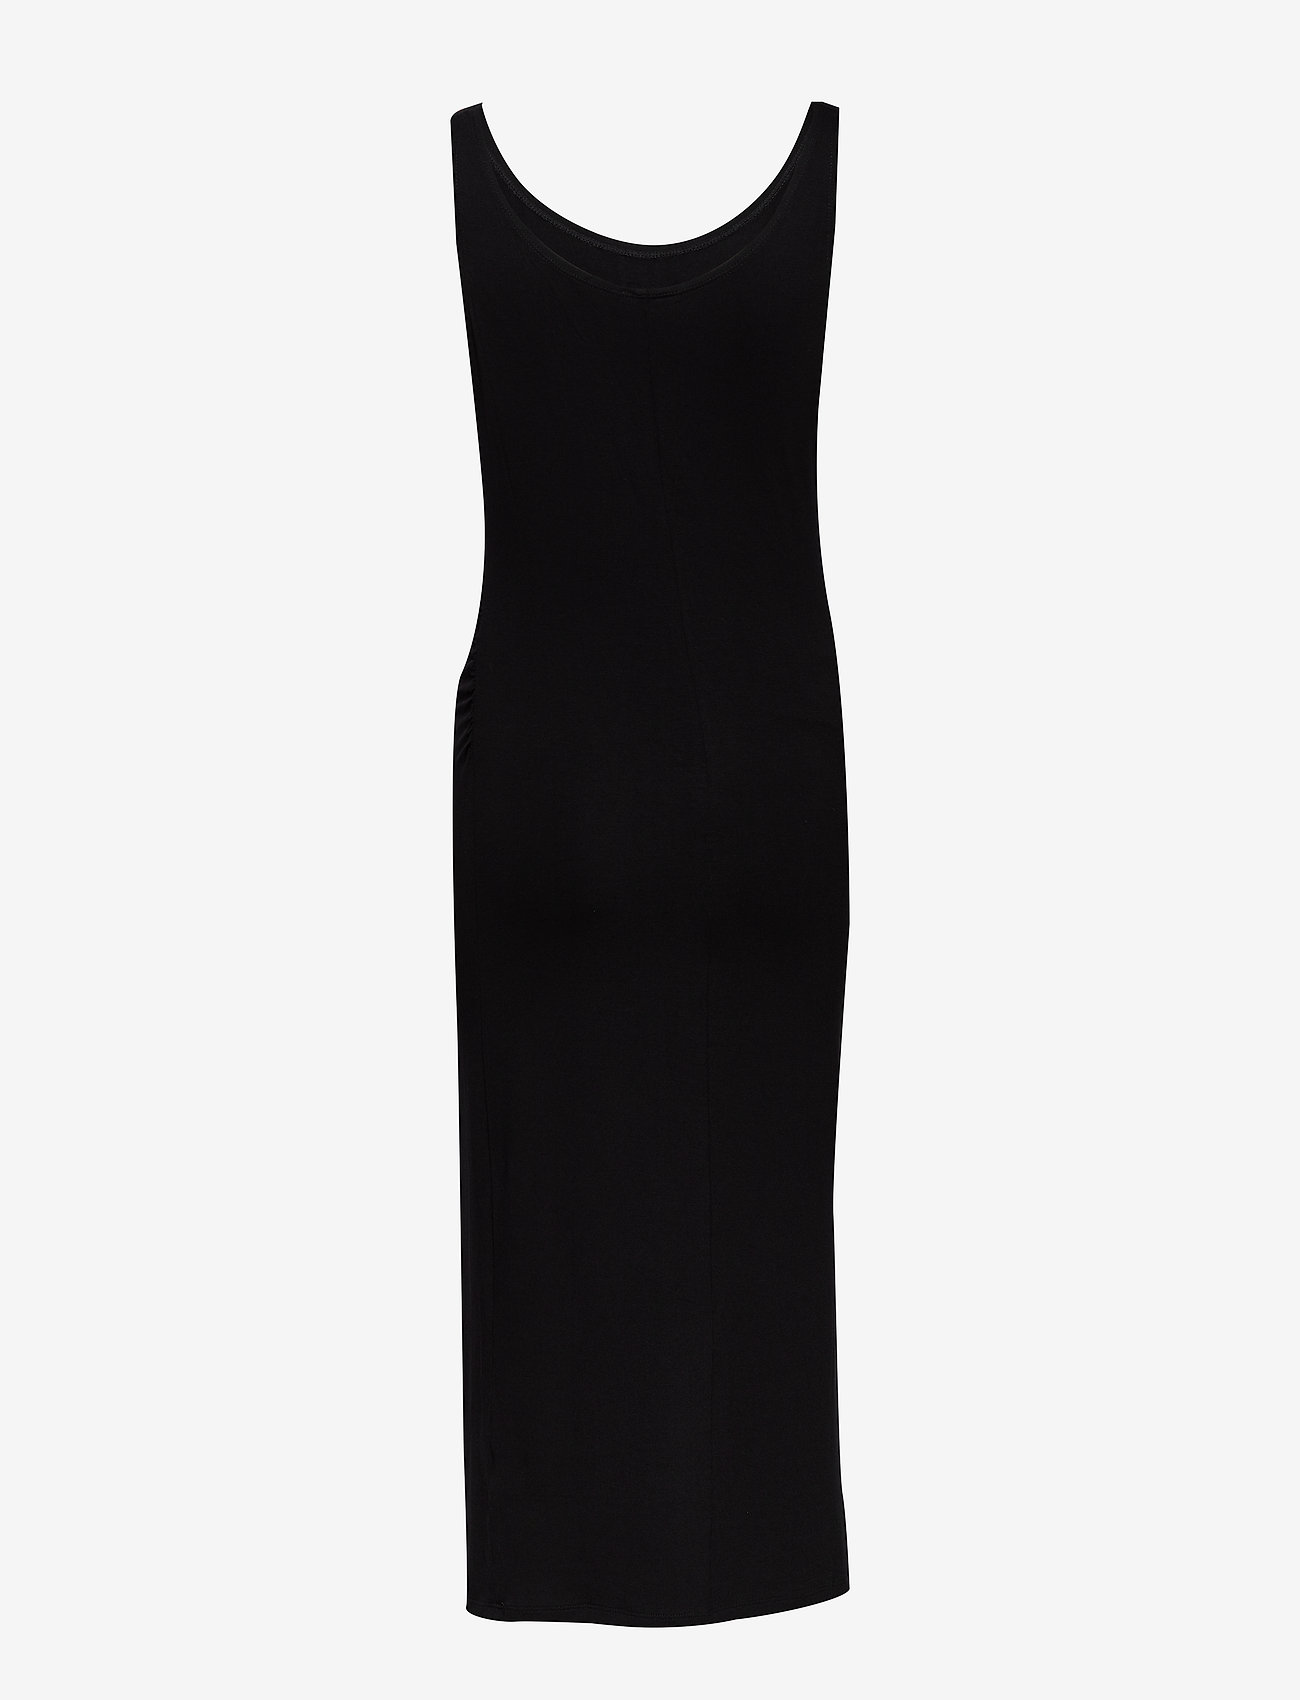 Lindex - Dress MOM Joanne - etuikleider - black - 1